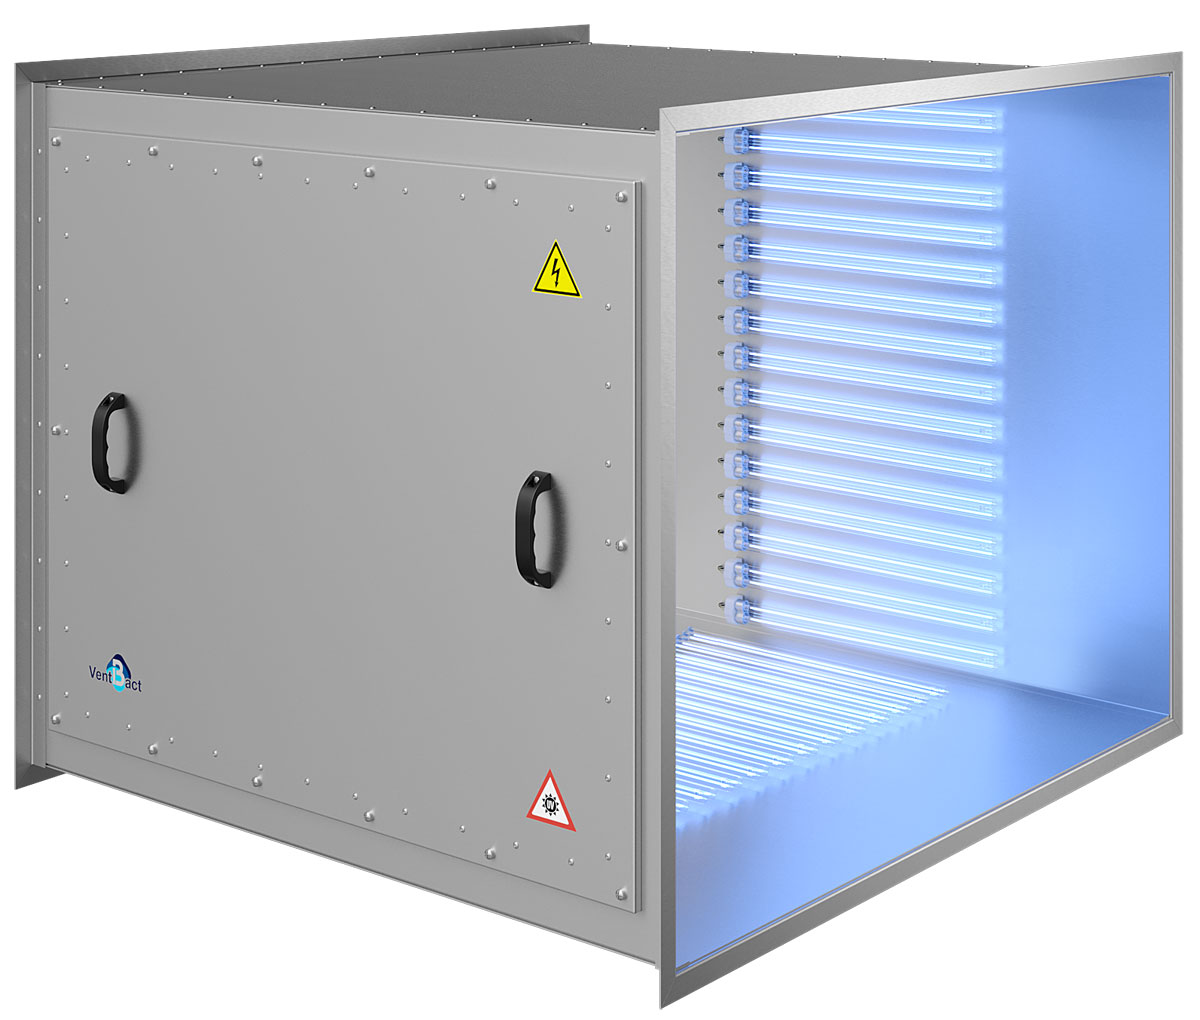 Бактерицидная секция Vent Bact VB 5100 для обеззараживания воздуха в системах вентиляции и кондиционирования